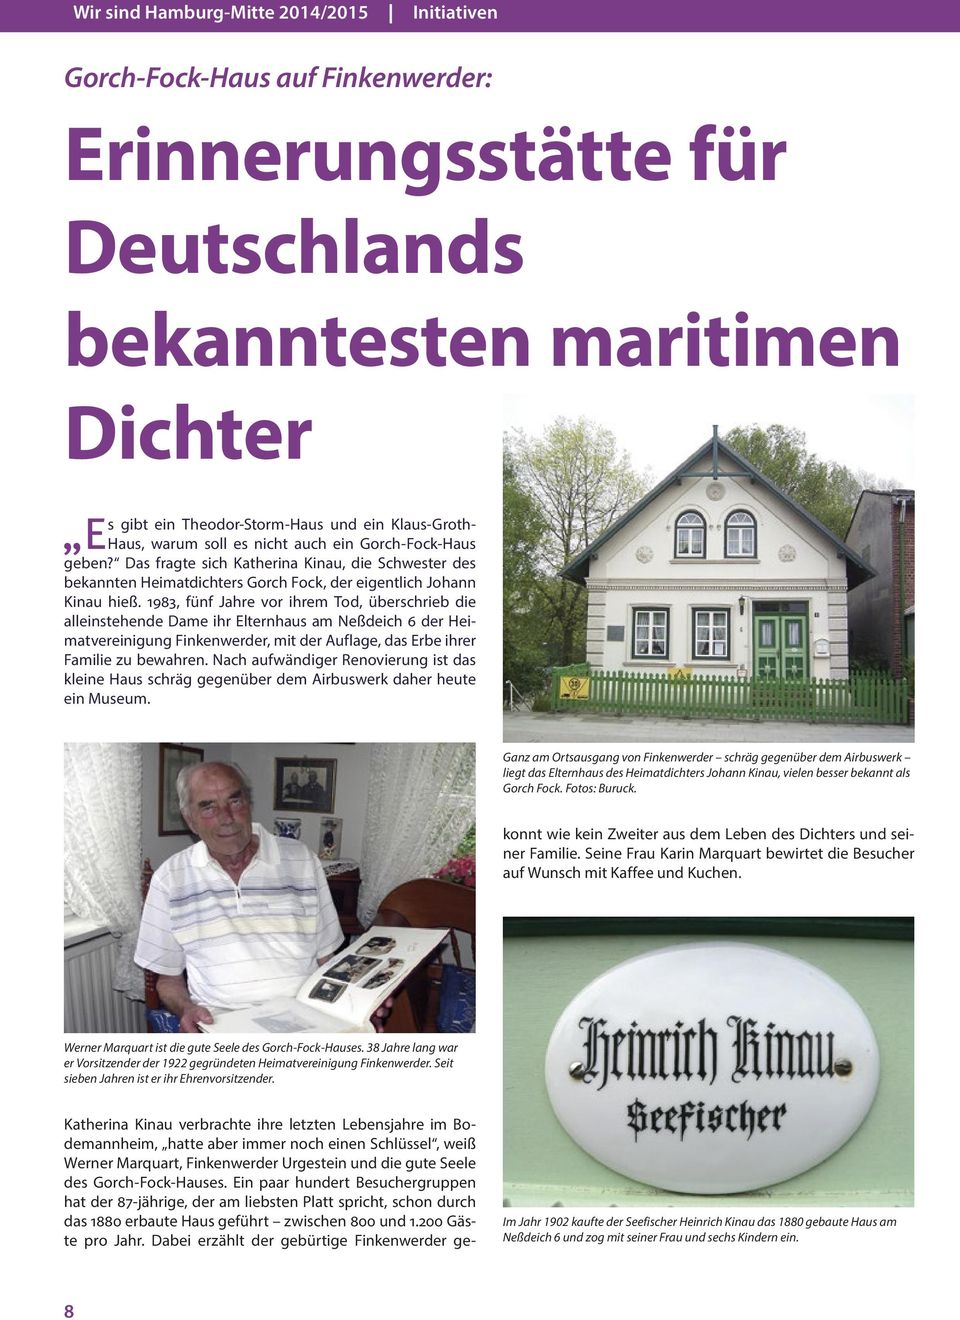 1983, fünf Jahre vor ihrem Tod, überschrieb die alleinstehende Dame ihr Elternhaus am Neßdeich 6 der Heimatvereinigung Finkenwerder, mit der Auflage, das Erbe ihrer Familie zu bewahren.